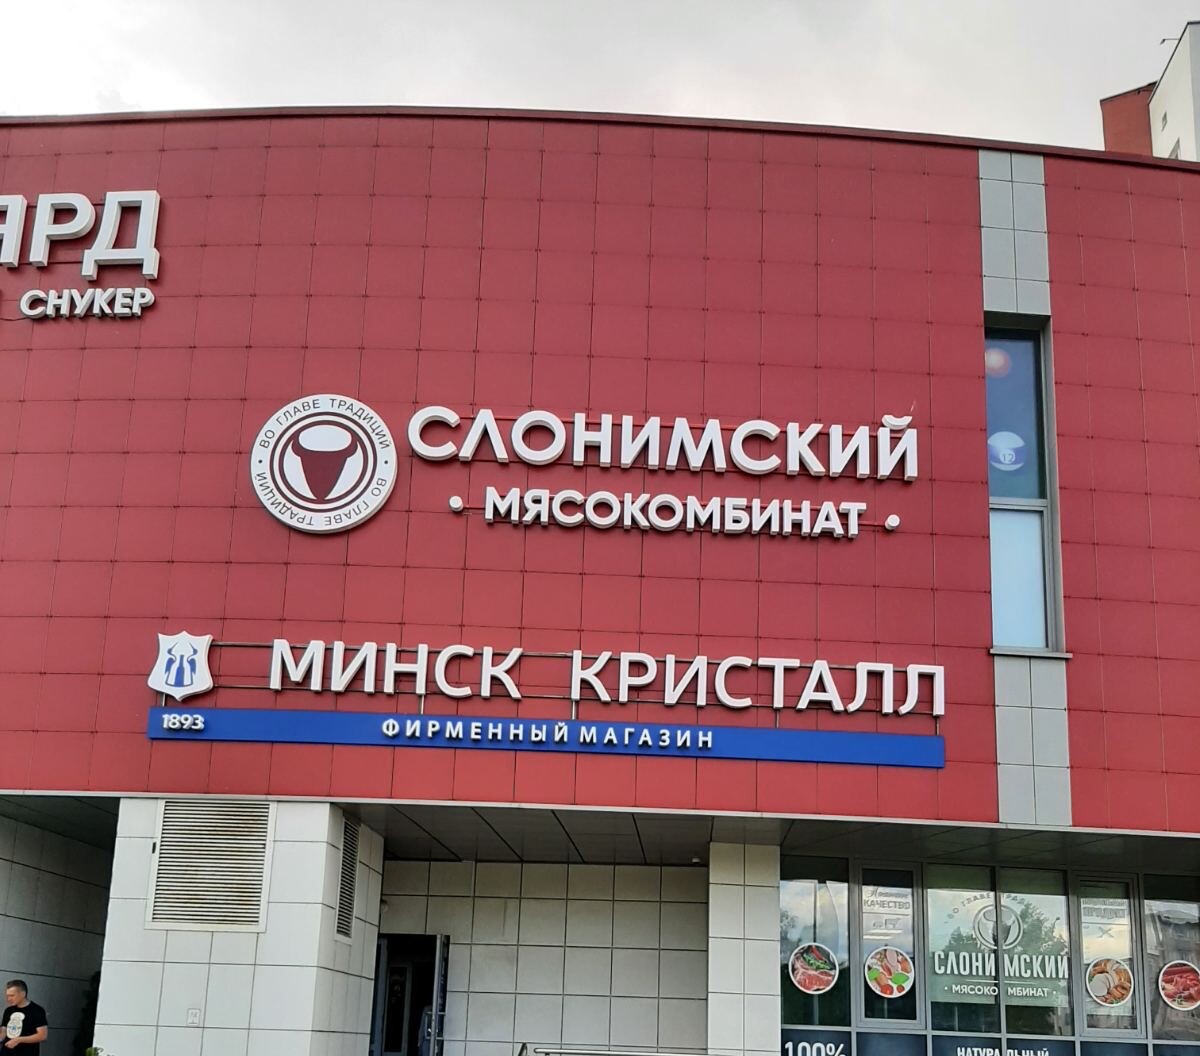 Открылся новый магазин Слонимского мясокомбината в Минске, ул. Гурского 43а! Приглашаем!